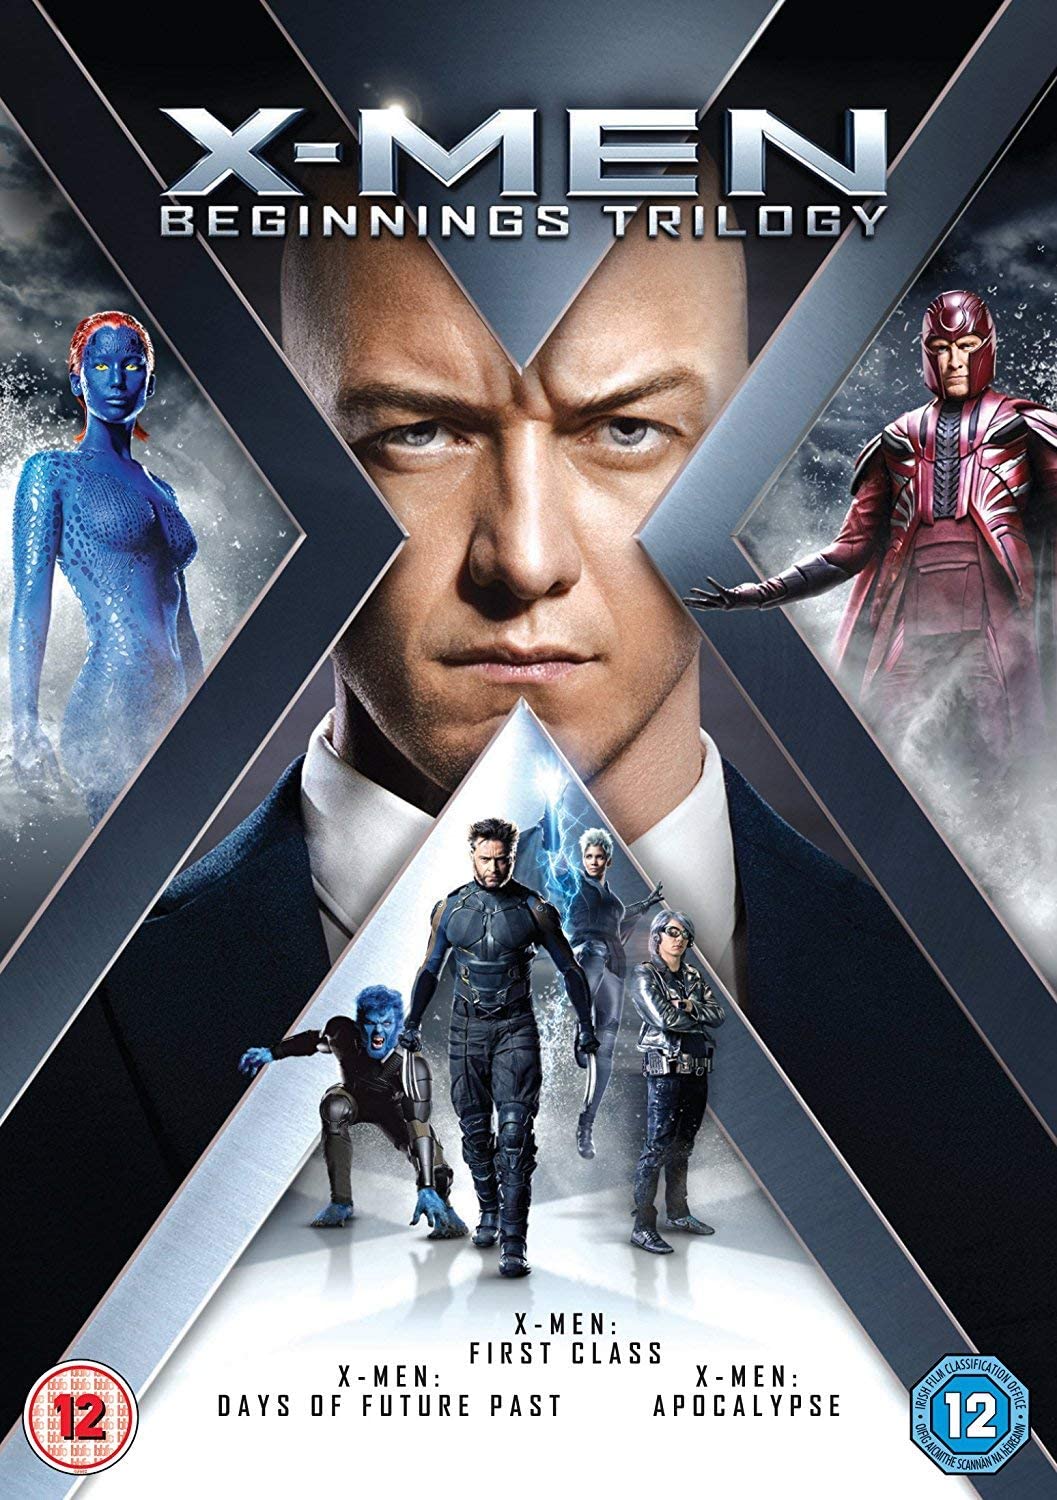 X-Men: Beginnings Trilogy - Action/Sci-fi [DVD]